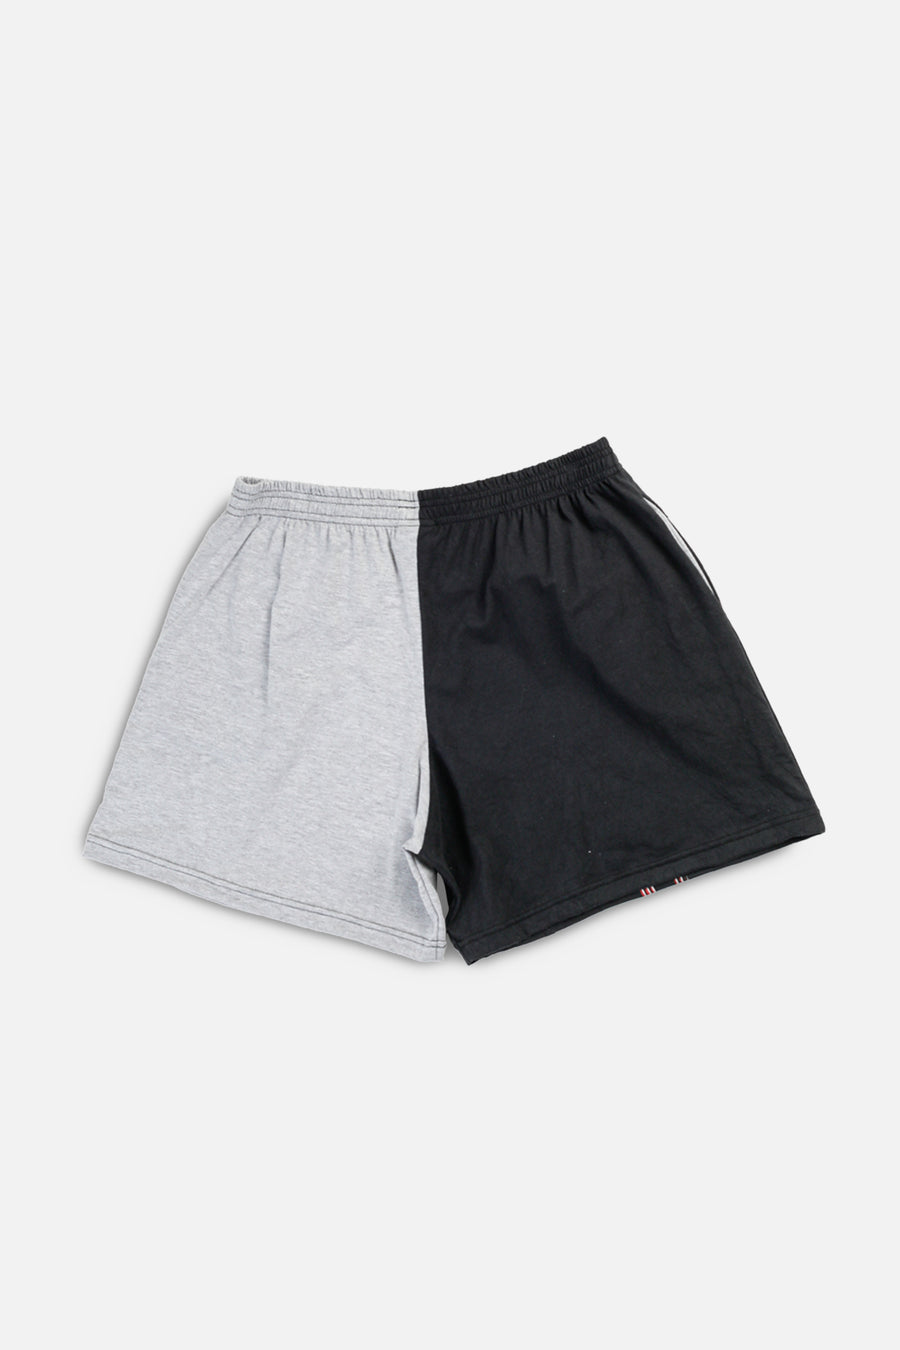 Unisex Rework Houston Rockets NBA Tee Shorts - XL